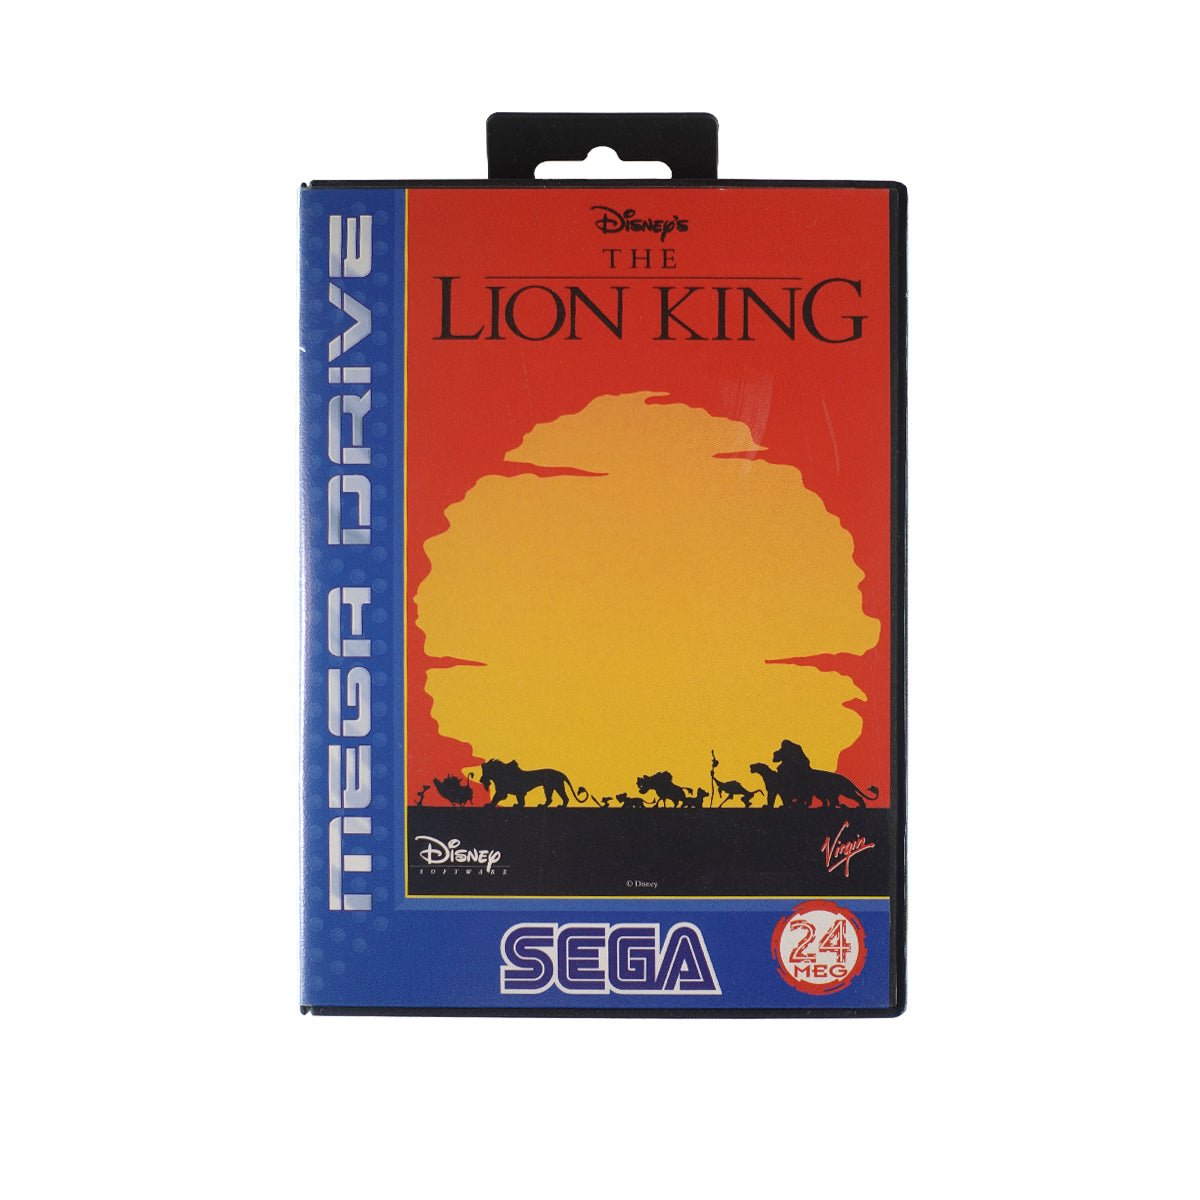 (Pre-Owned) Lion King - Sega Mega Drive - ريترو - Store 974 | ستور ٩٧٤